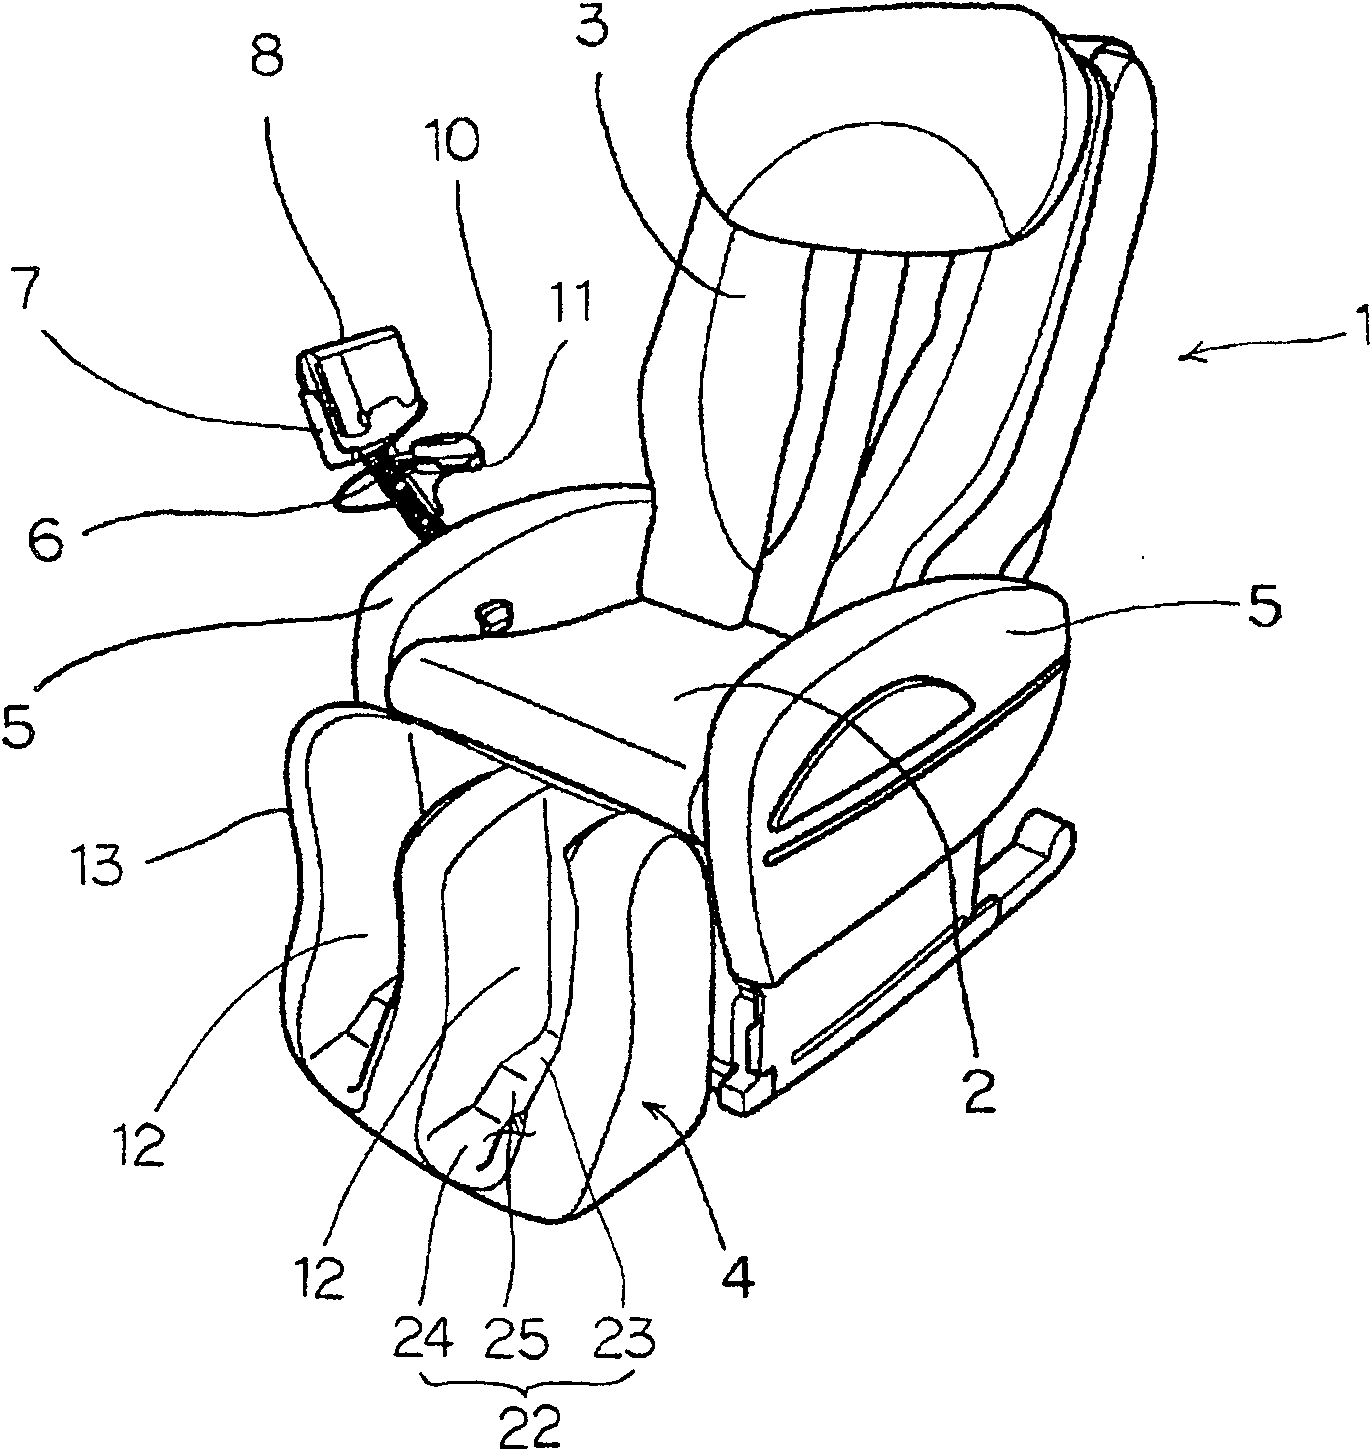 Chair type massaging machine